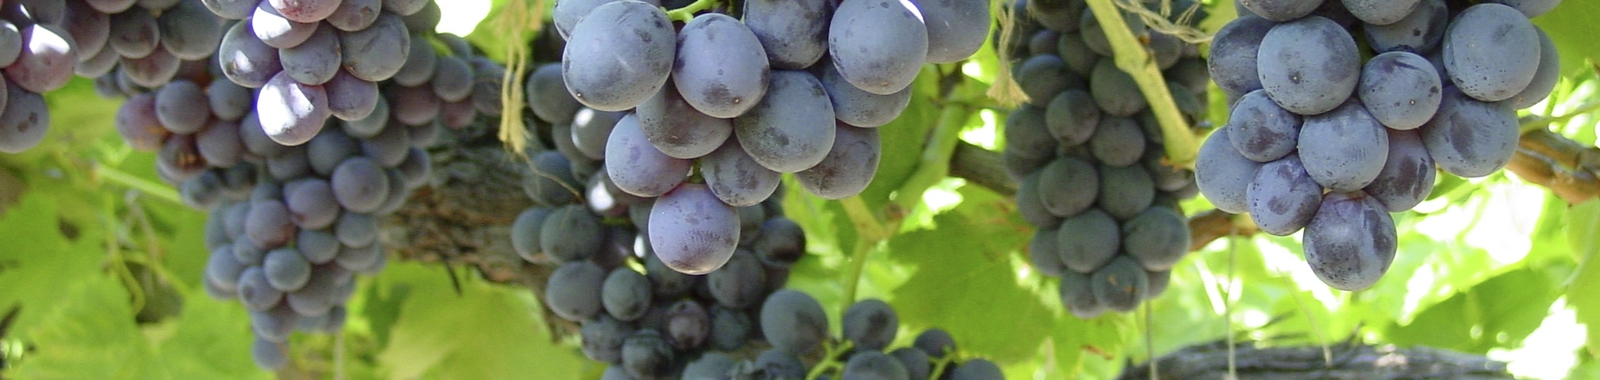 Wine Grape Fertilizer Program - Water Soluble